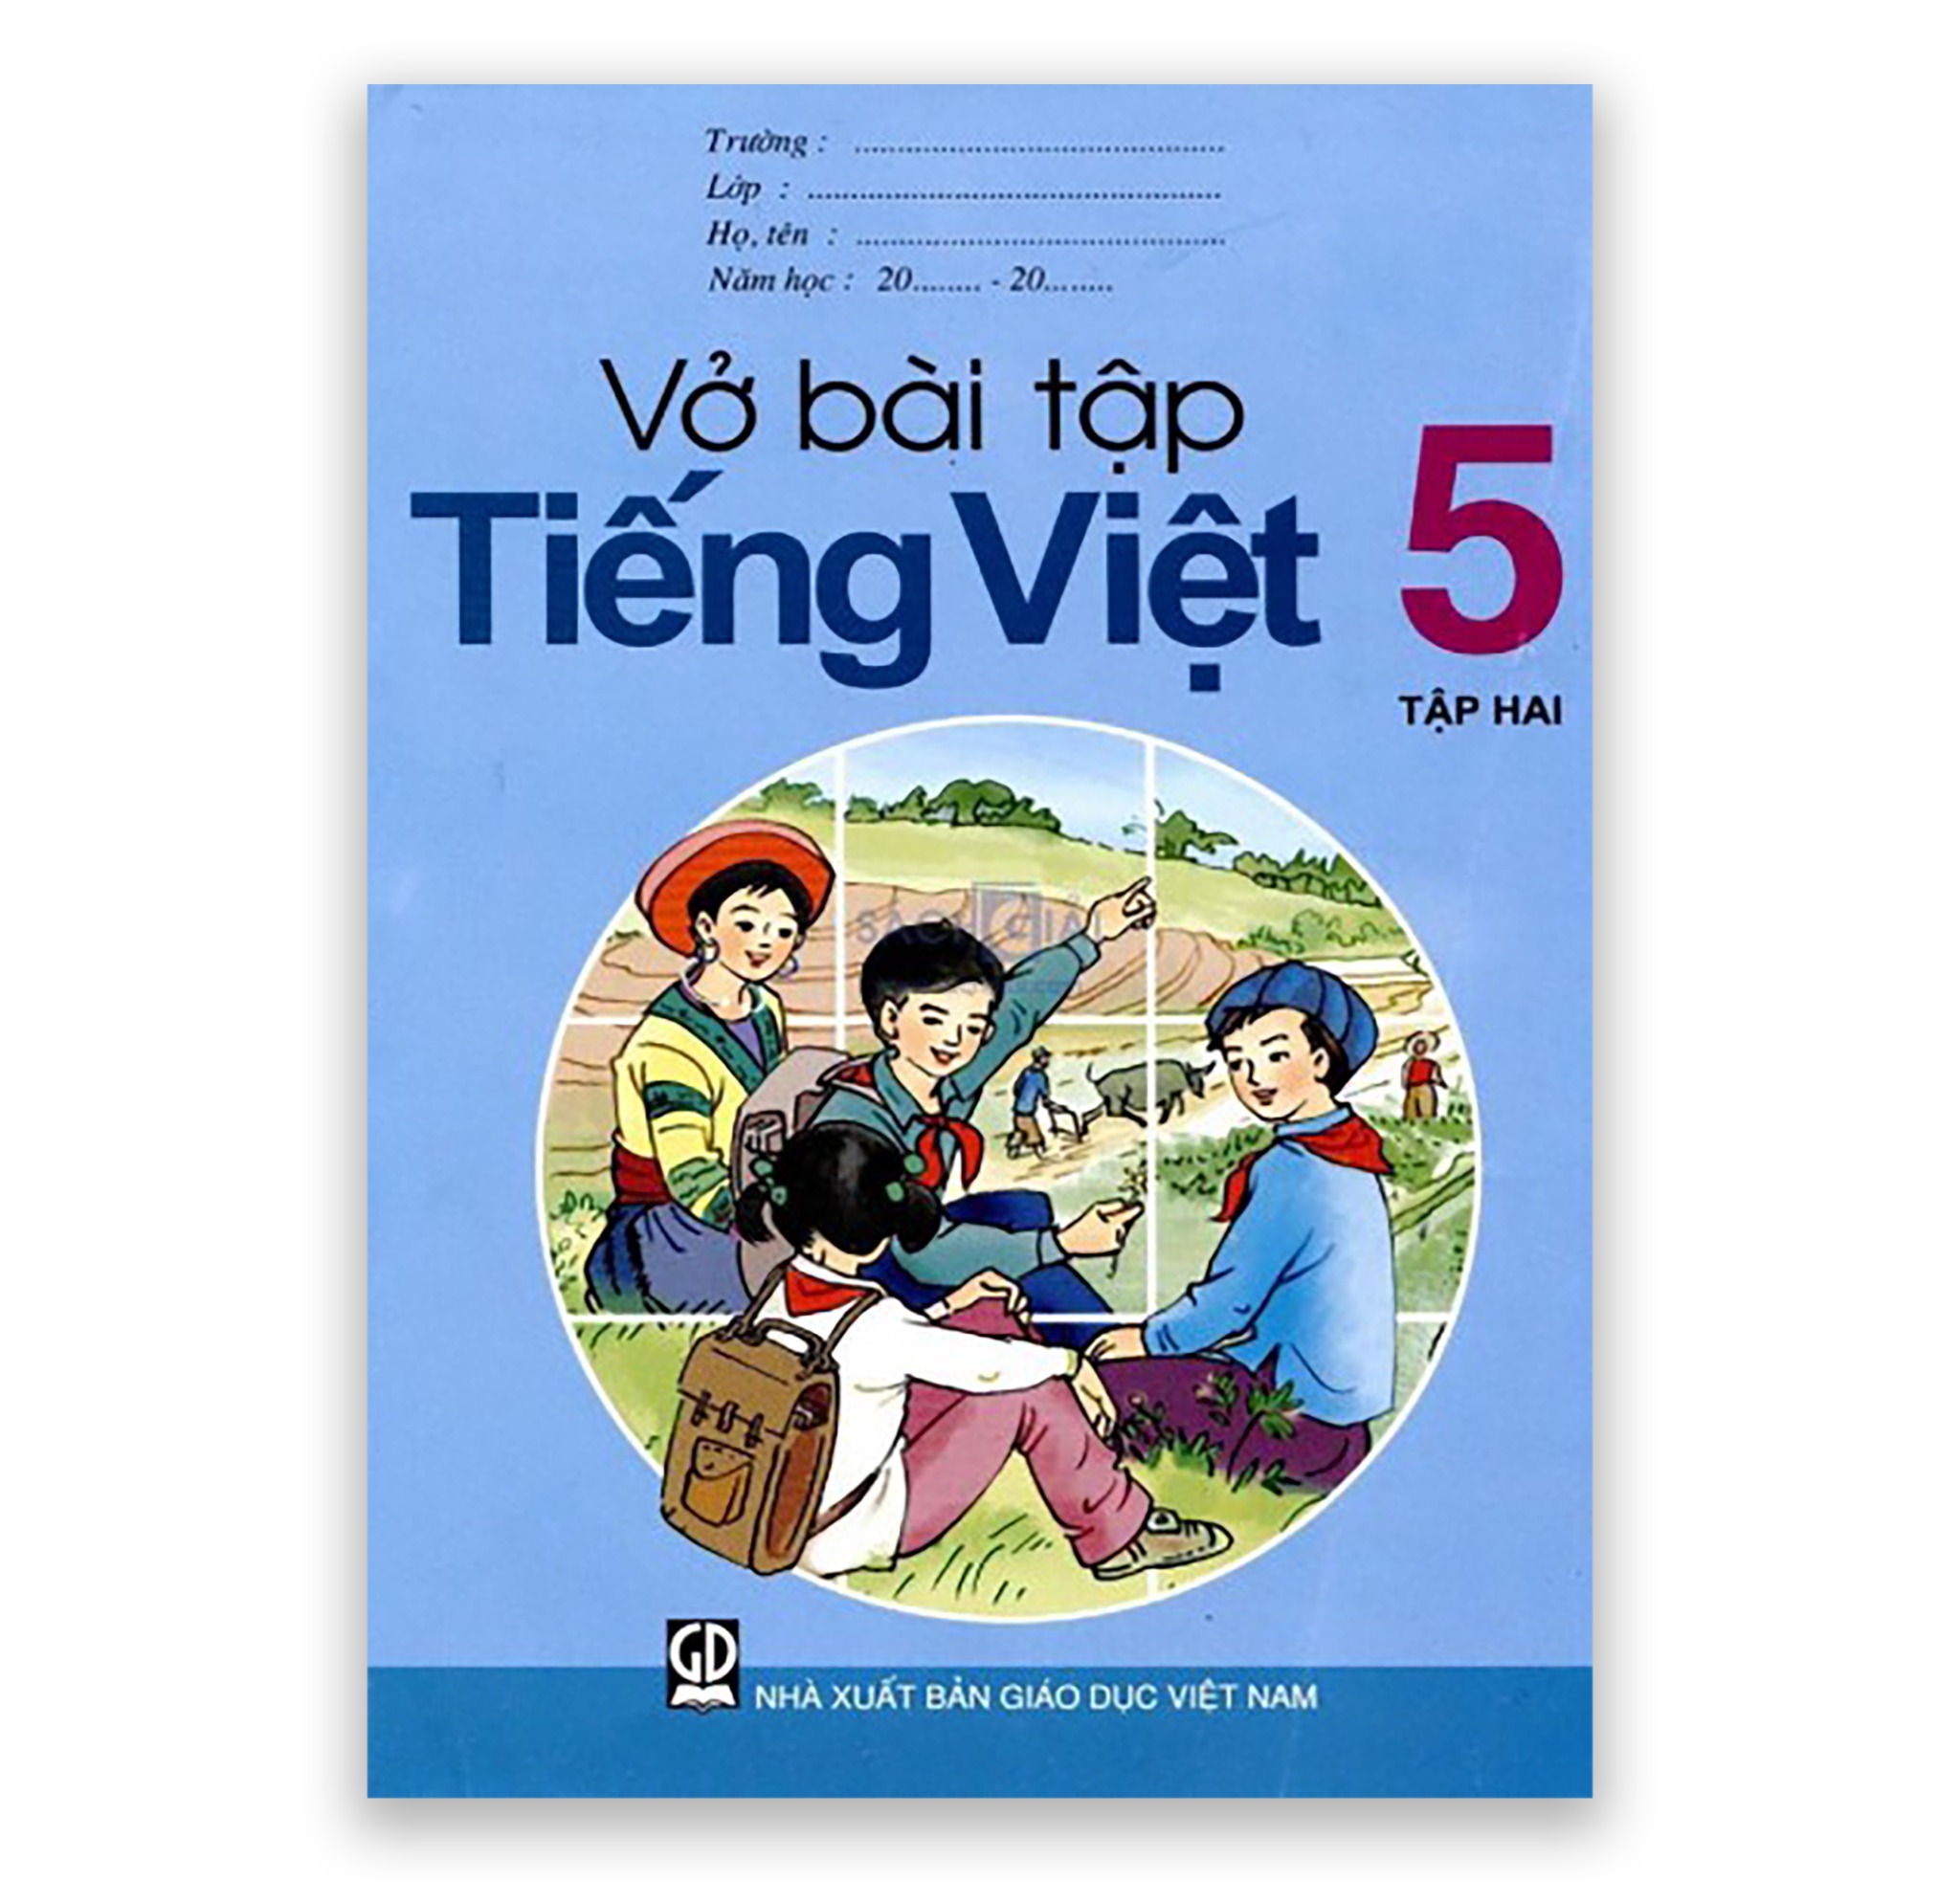 Vở Bài Tập Tiếng Việt Lớp 5 giúp các học sinh rèn luyện khả năng đọc hiểu và viết từ cơ bản tới nâng cao. Những bài tập thú vị và phù hợp với độ tuổi giúp học sinh hứng thú và tạo động lực học tập. Thông qua việc đọc và viết, con bạn sẽ học được những điều mới mẻ và rèn luyện khả năng sáng tạo, tư duy phản biện.